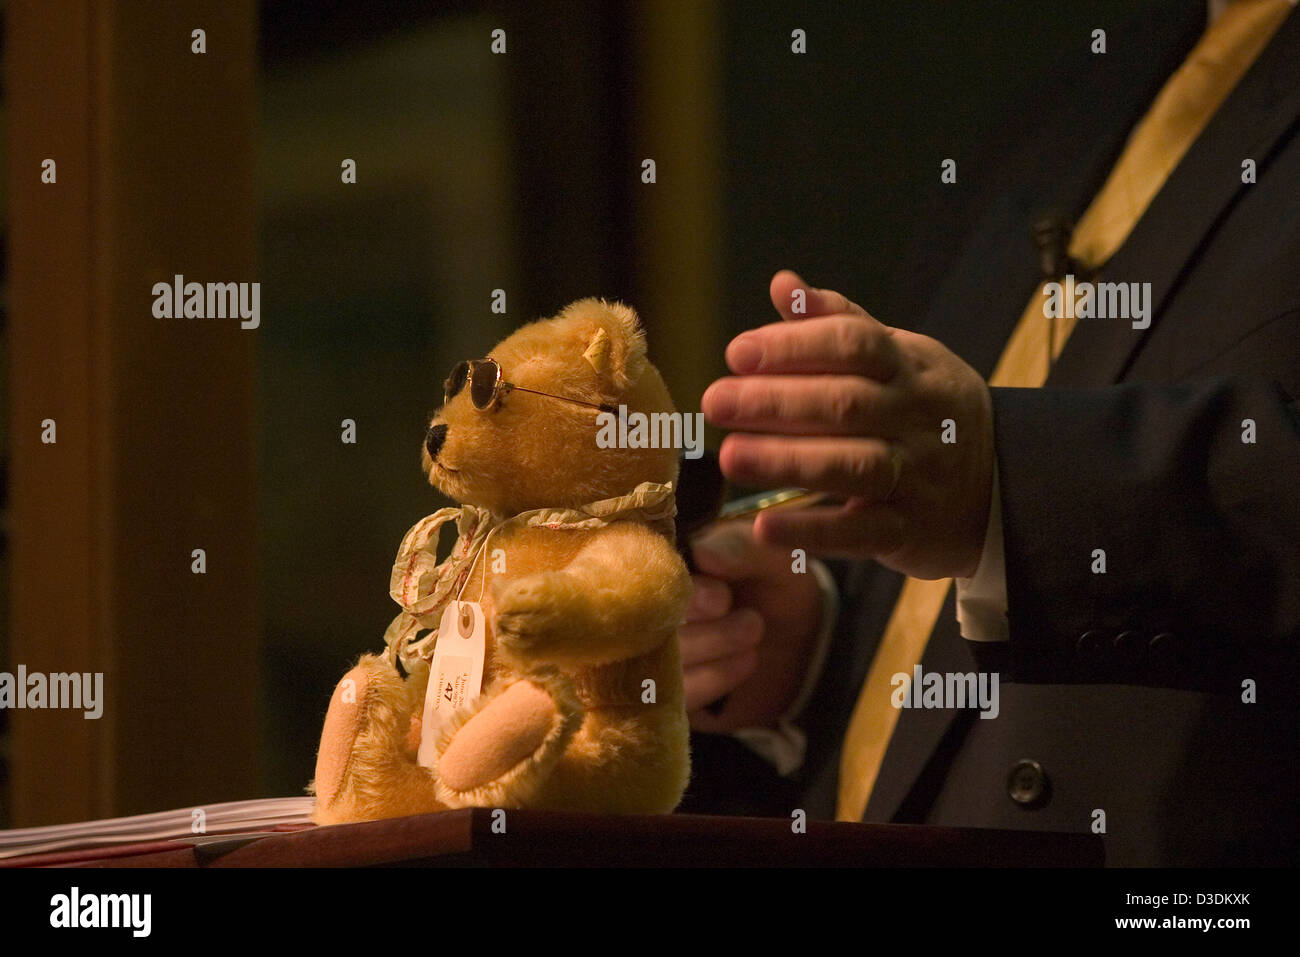 Londra, Inghilterra - Giugno 2004: un orso di peluche (lotto 47) siede su il banditore il rostro durante l'orsacchiotto saleat una casa d'aste Christie's, South Kensington. Questo orso è stata venduta per £143. Foto Stock